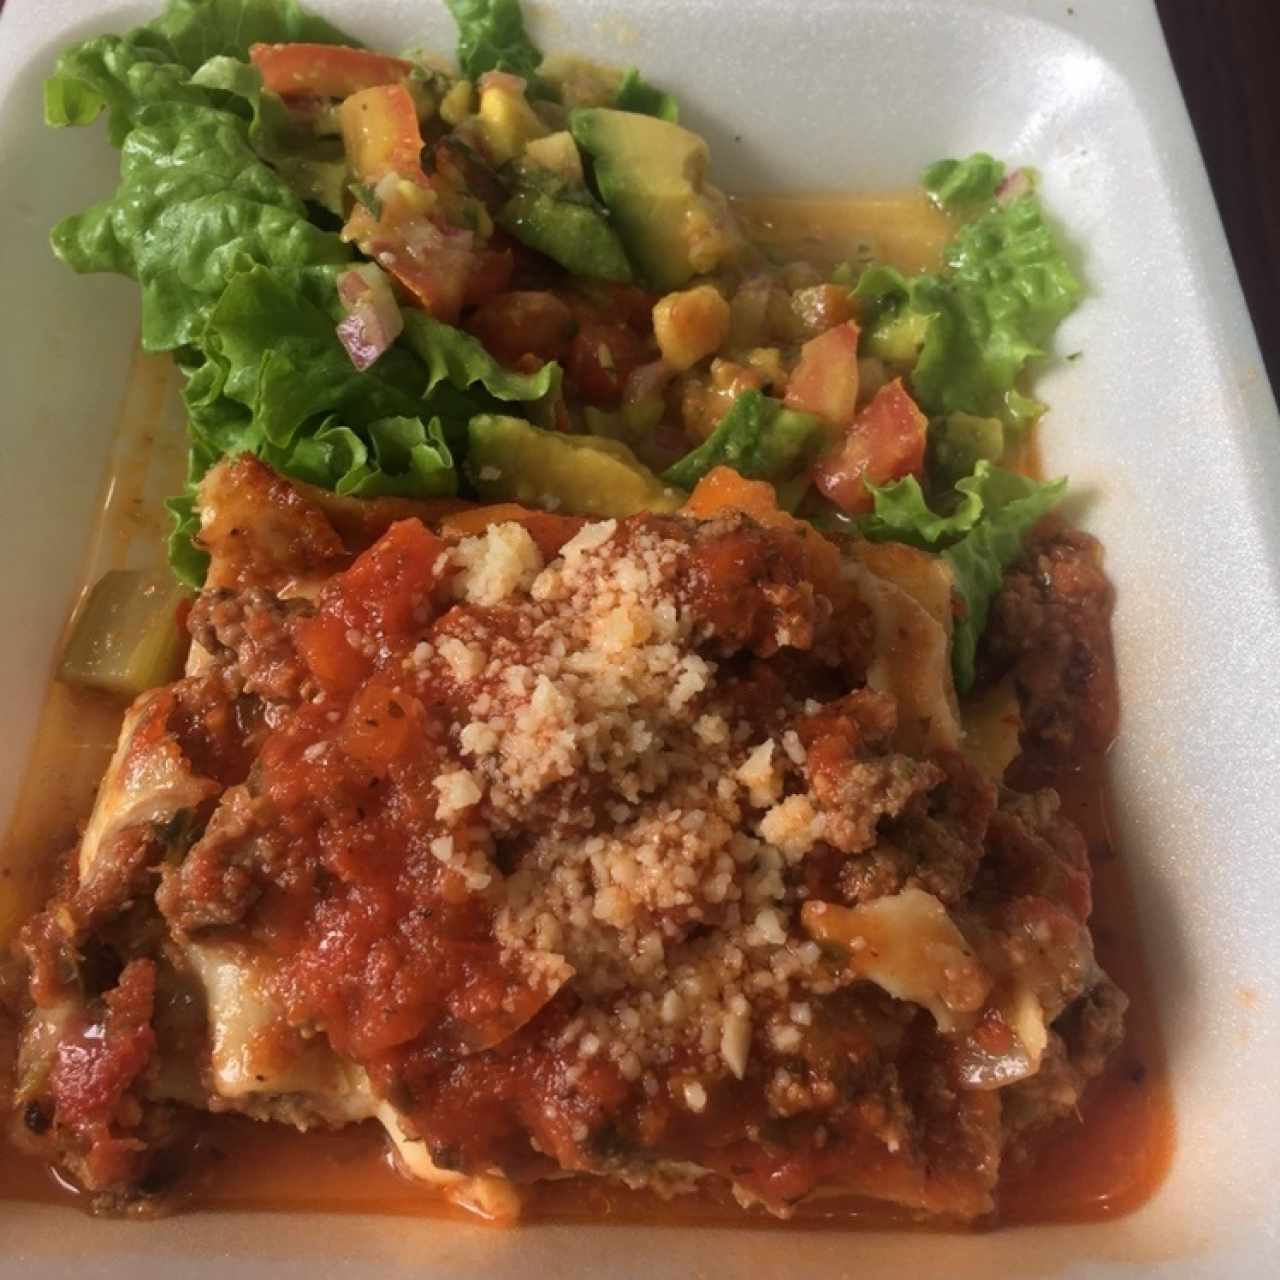 menu del dia- lasagna y ensalada